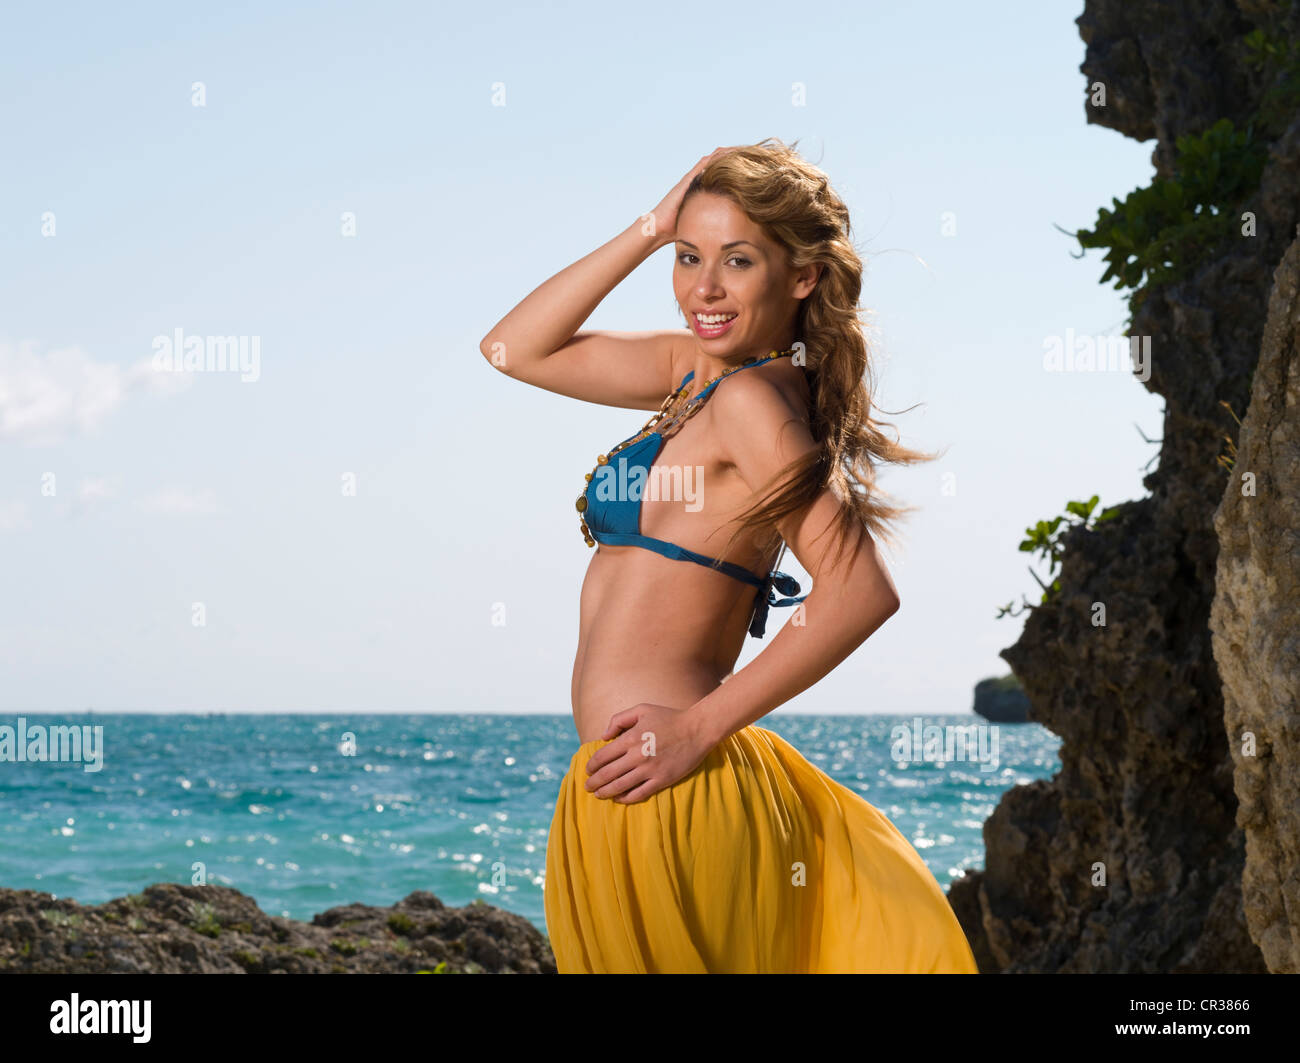 Brazilian girl on the beach in bikini Stock Photo